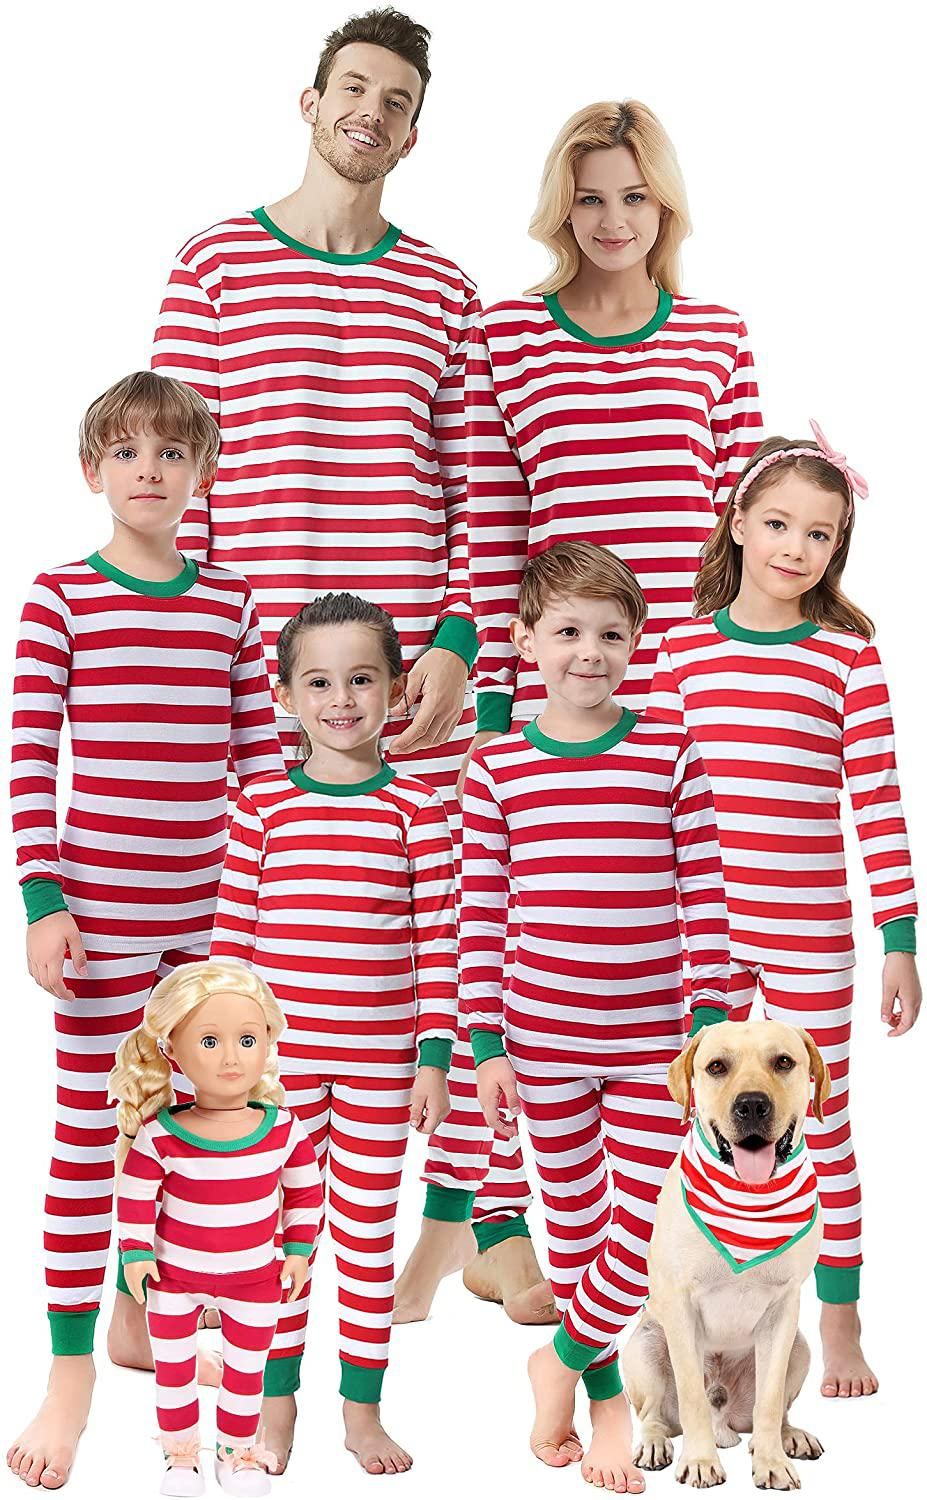 KYLEON Matching Family Christmas Pajamas Boys Girls Plaid Deer Pjs Toddler Kids Children Sleepwear Women Men Xmas Set